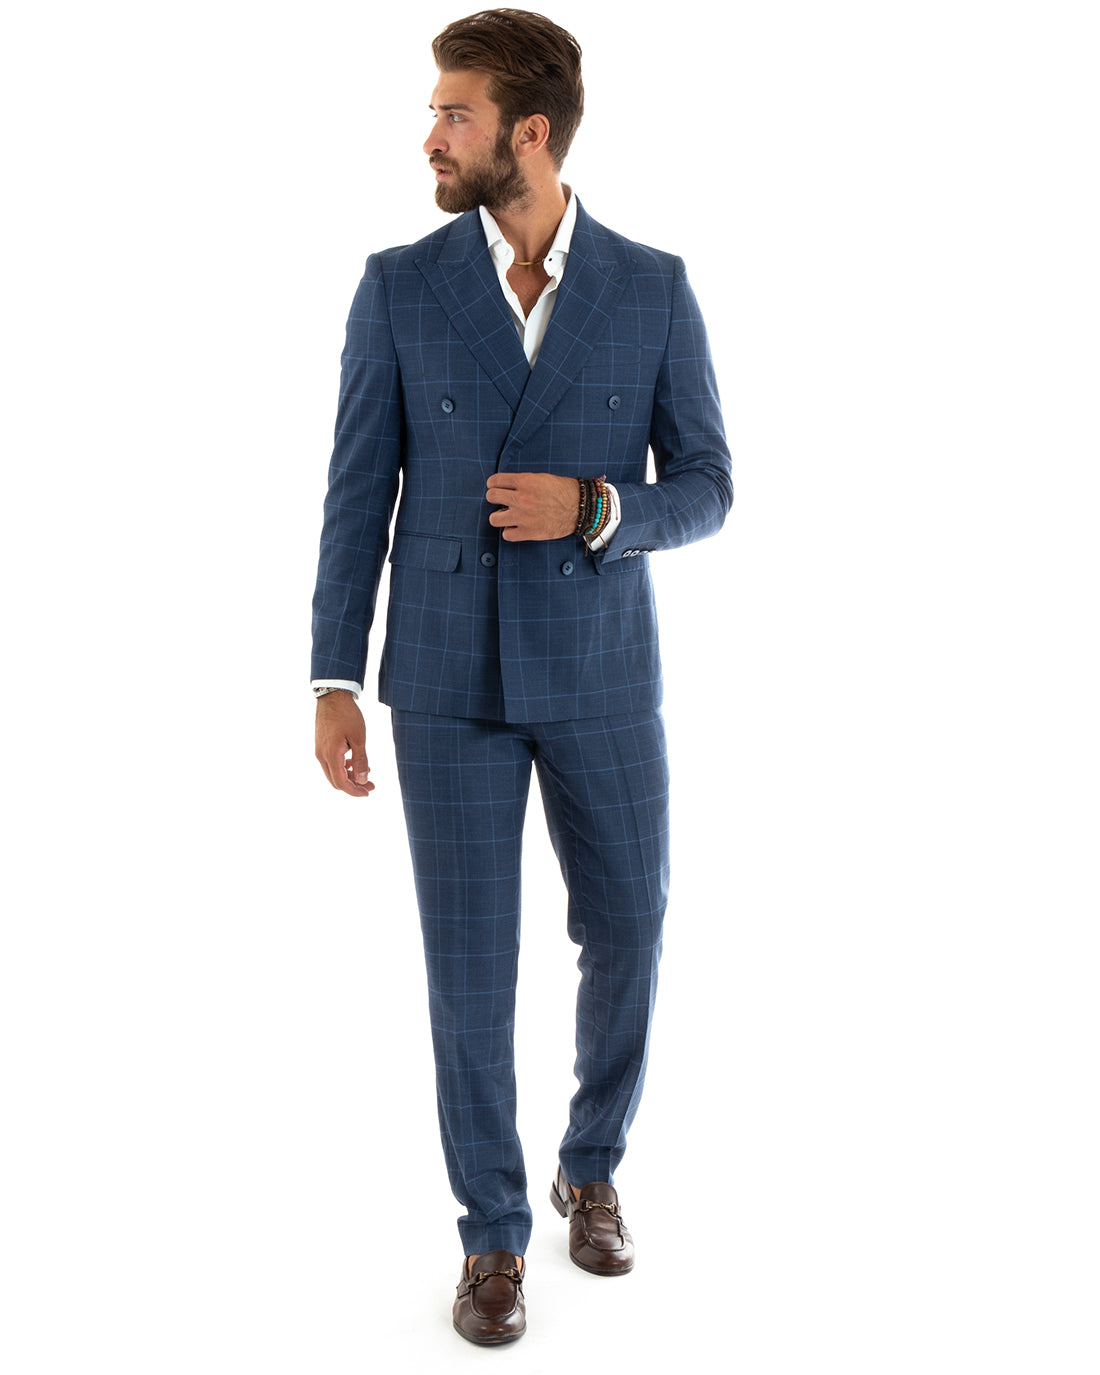 Abito Uomo Doppiopetto Vestito Completo Giacca Pantaloni Blu a Quadri Elegante Casual GIOSAL-OU2402A